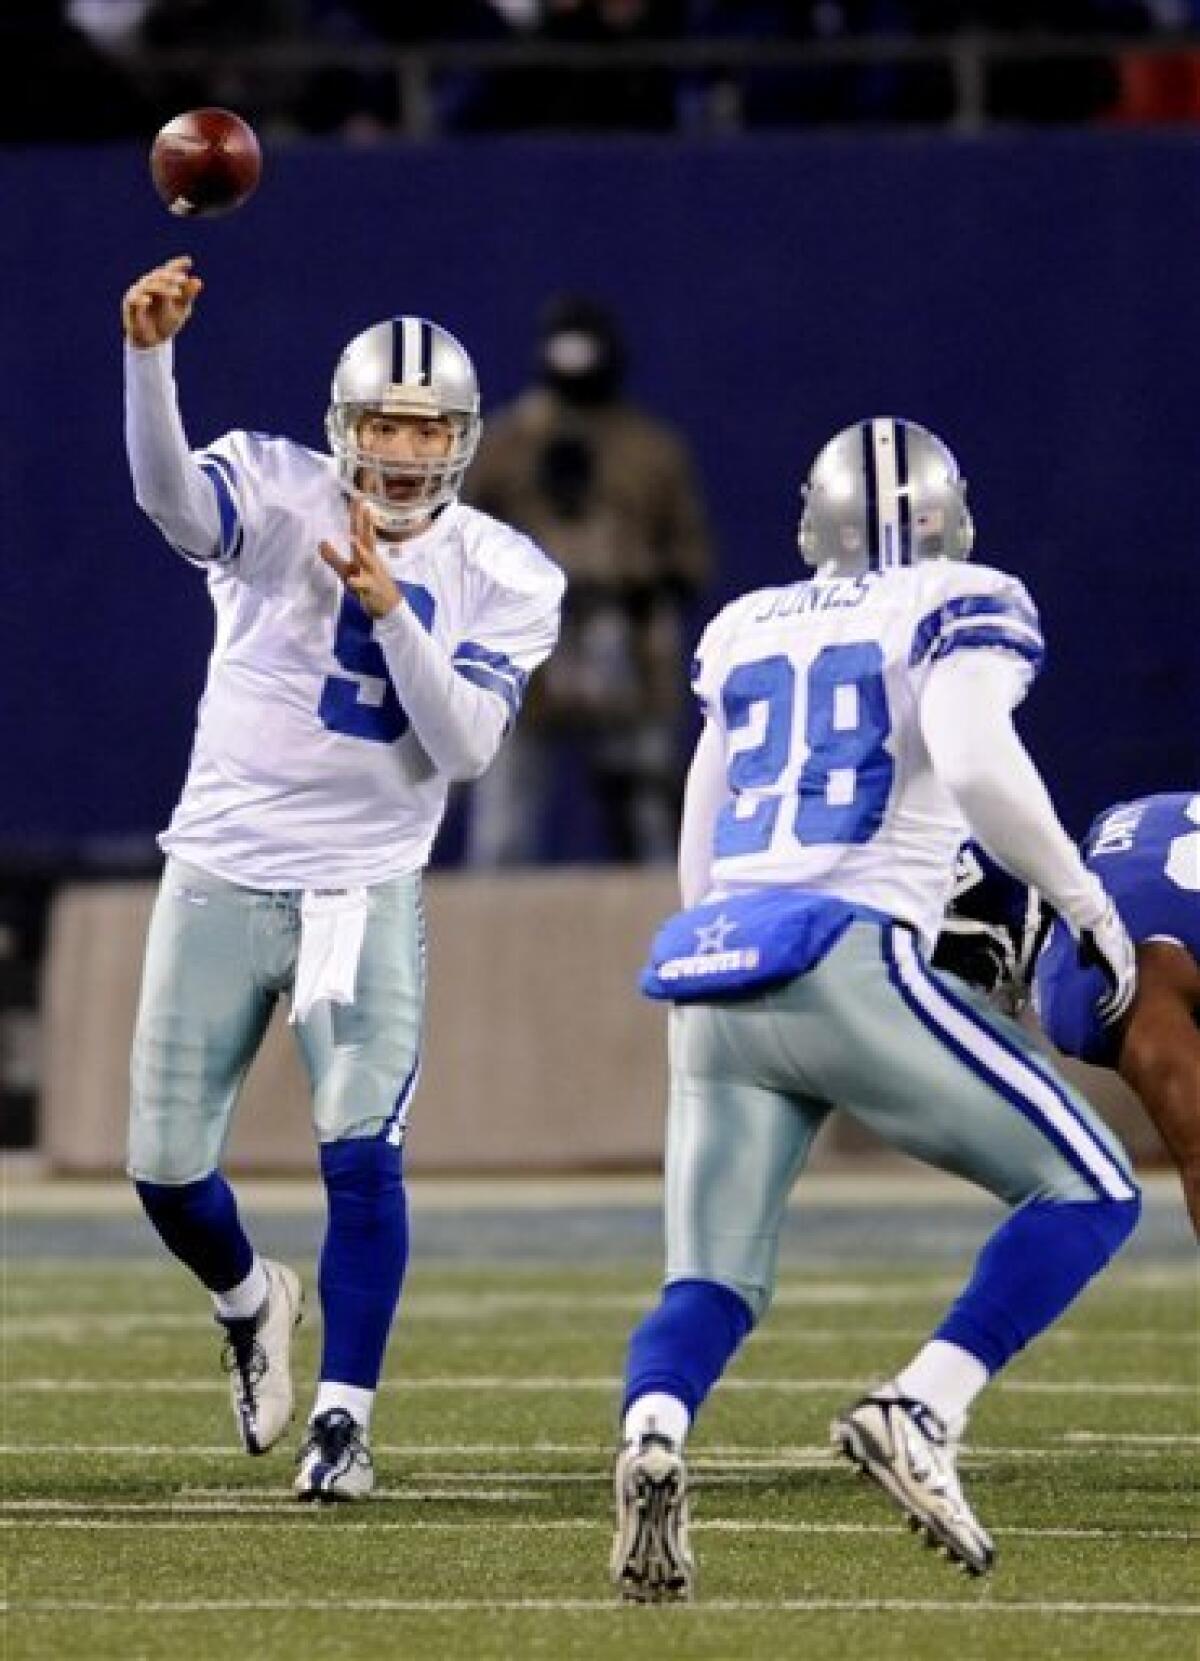 Now holding for Cowboys' kicks: Tony Romo? - The San Diego Union